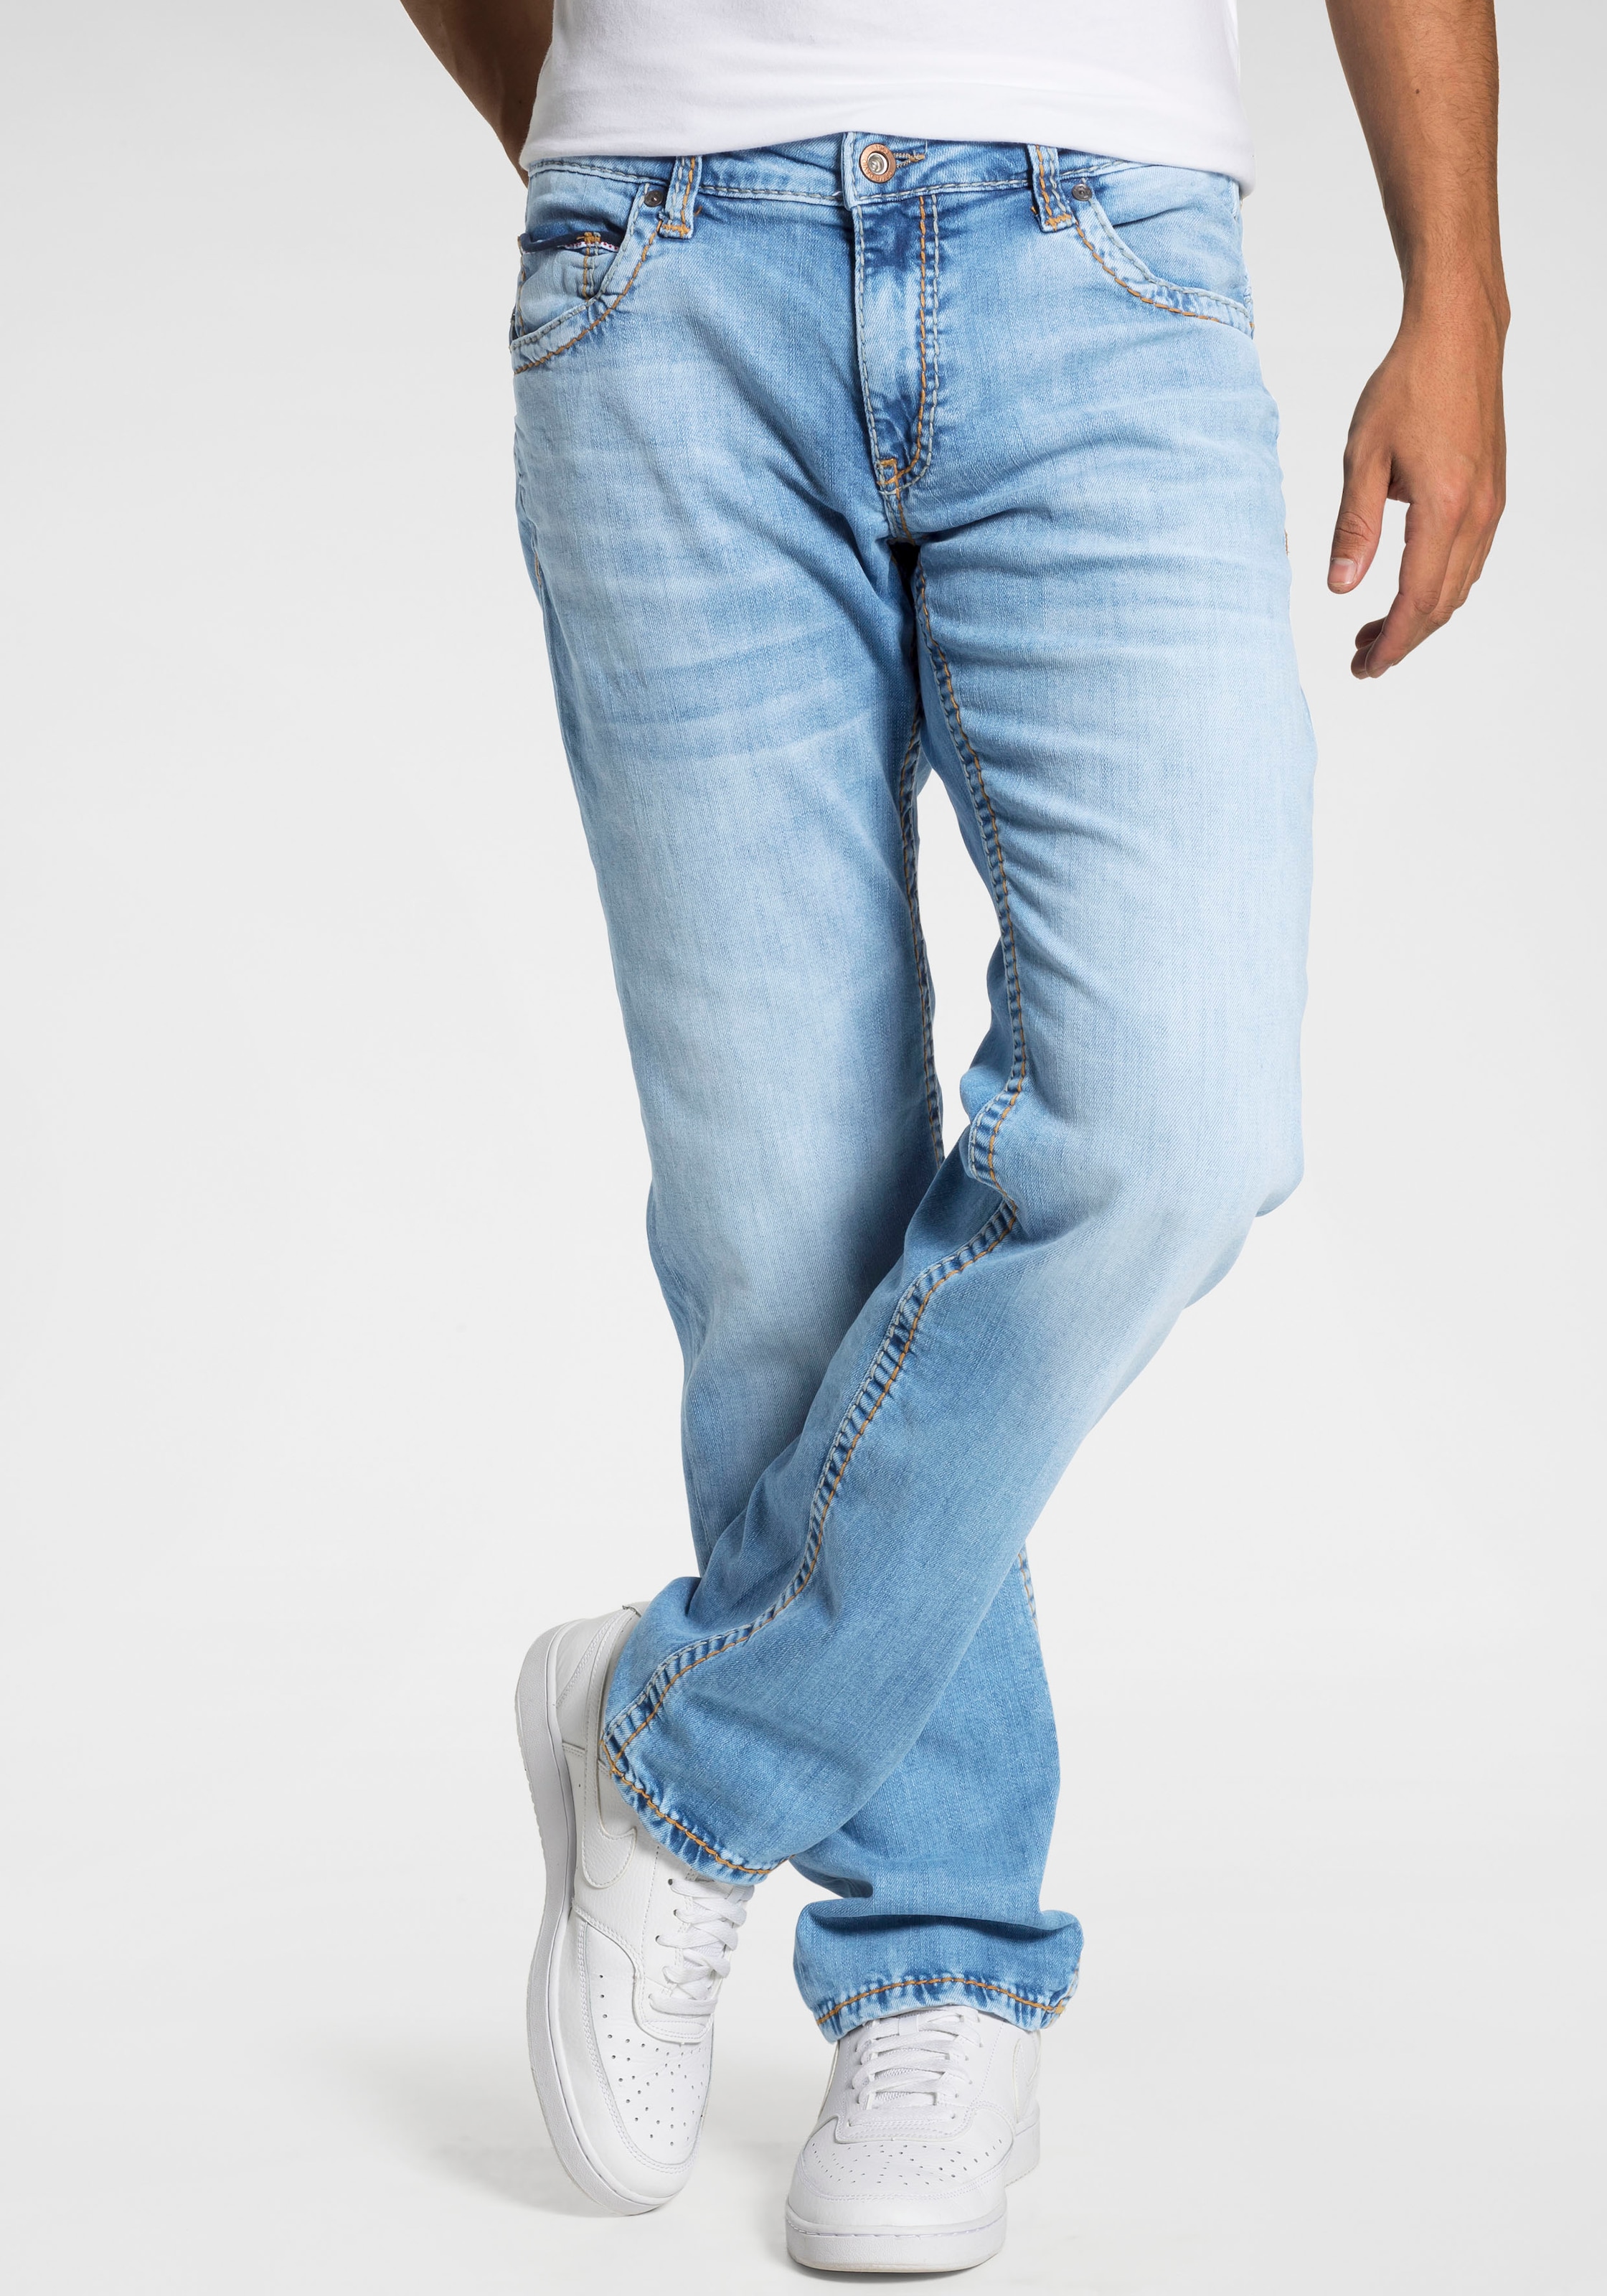 ➤ Bequeme Jeans versandkostenfrei bestellen